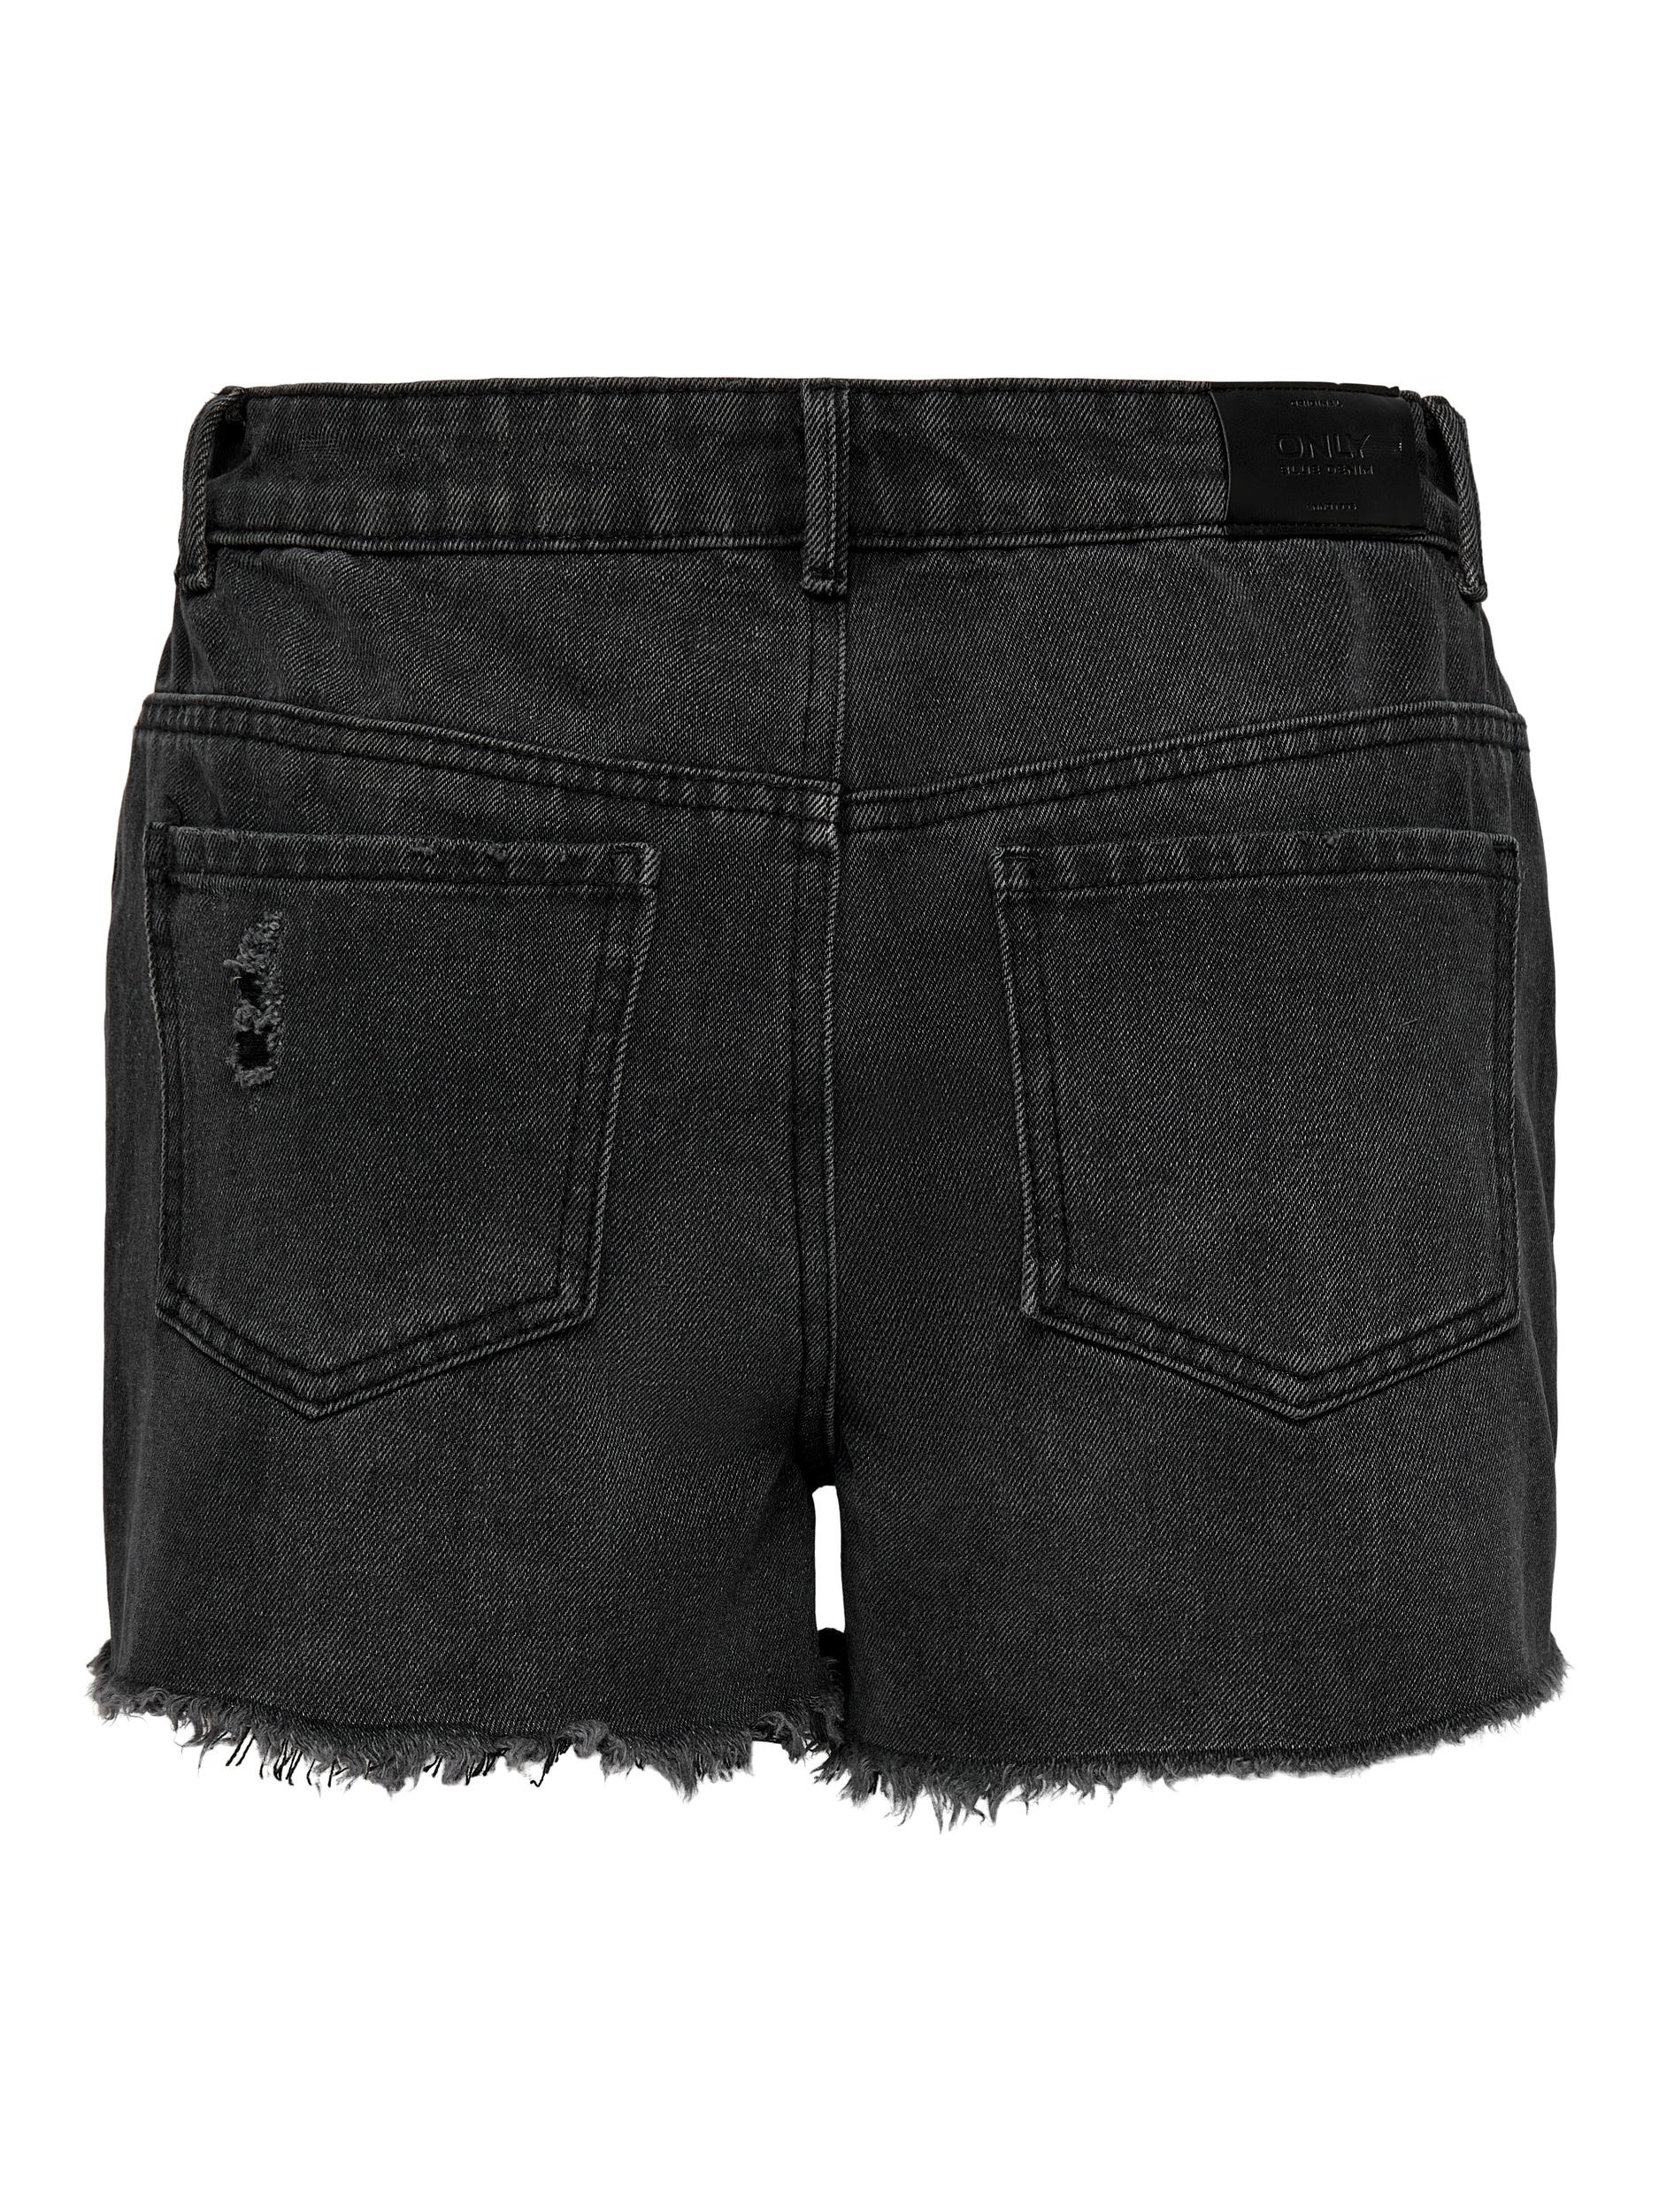 Only - Regular fit five-pocket shorts, Black, large image number 1